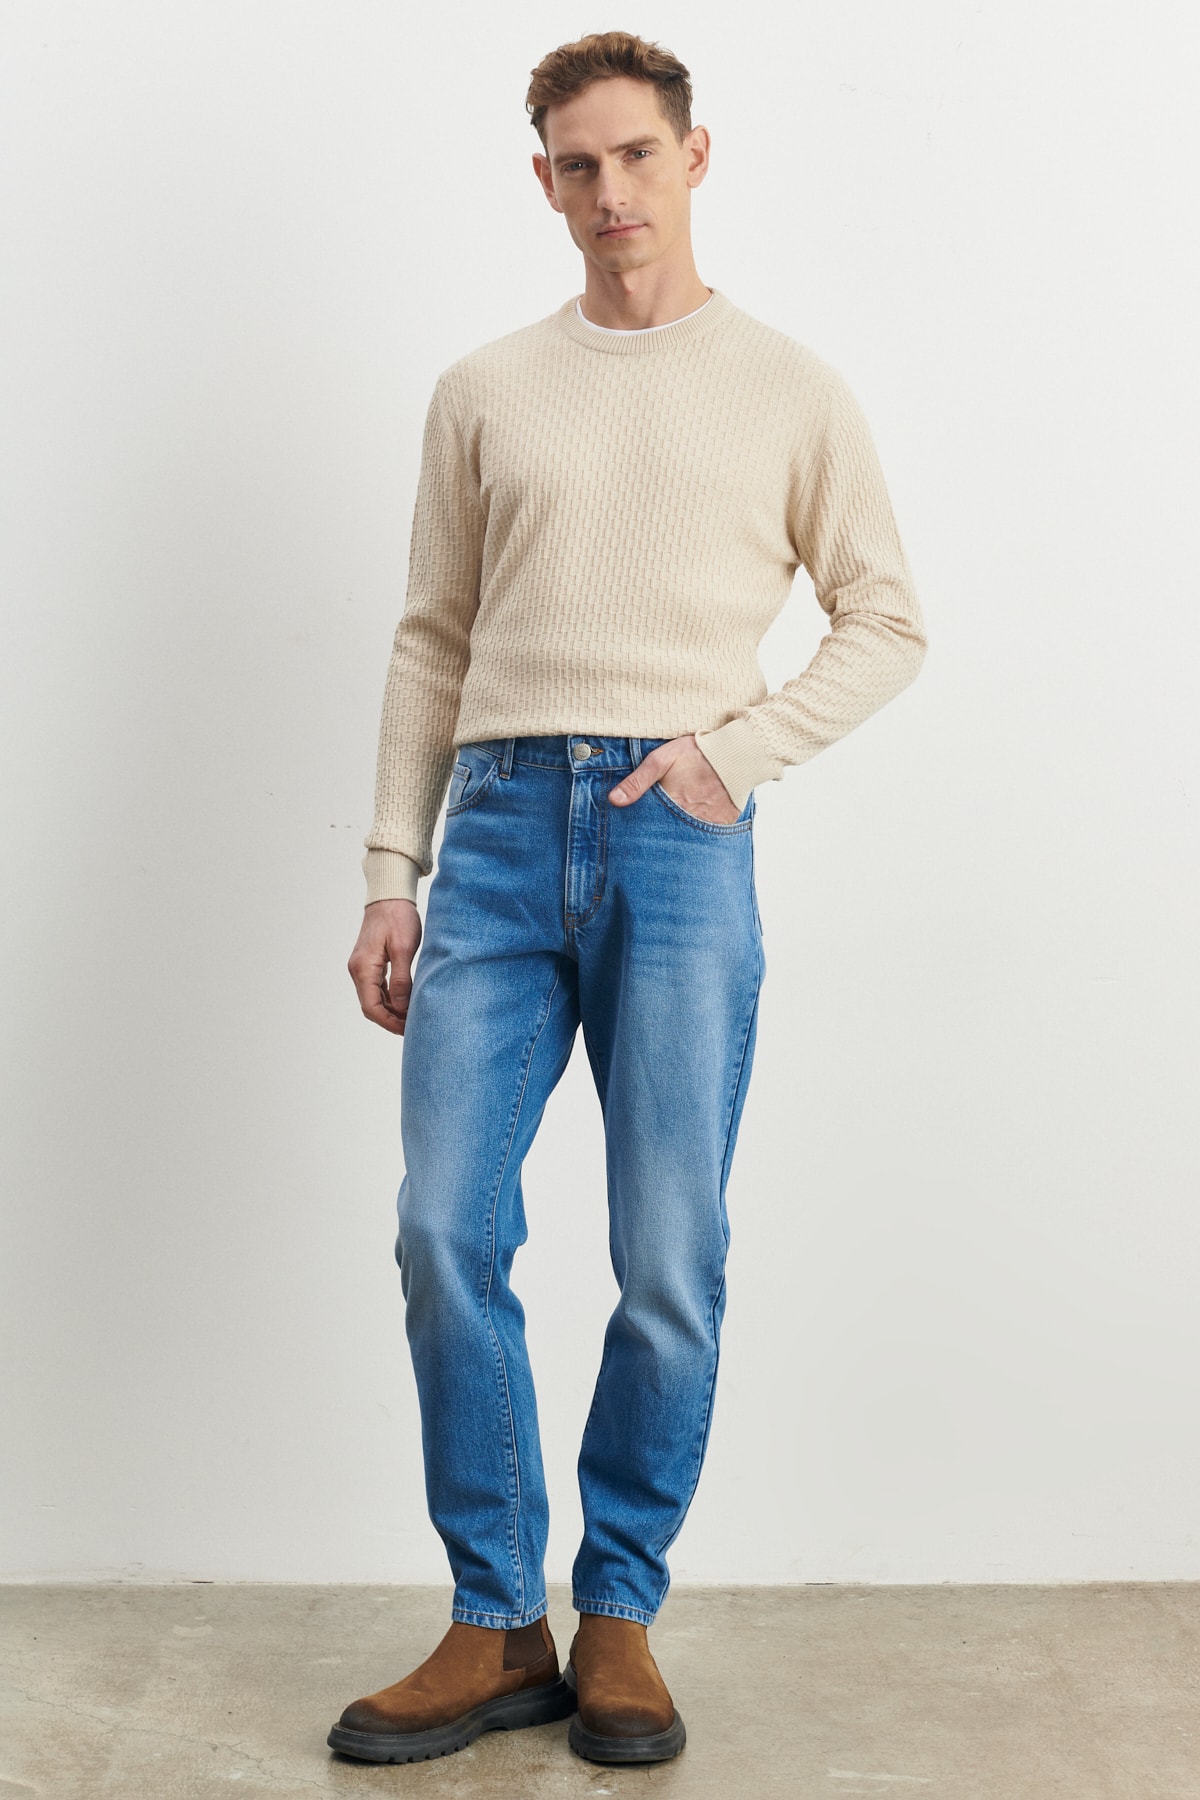 ALTINYILDIZ CLASSICS Men's Light Blue Comfort Fit Comfortable Cut 100% Cotton Jeans Denim Jeans.